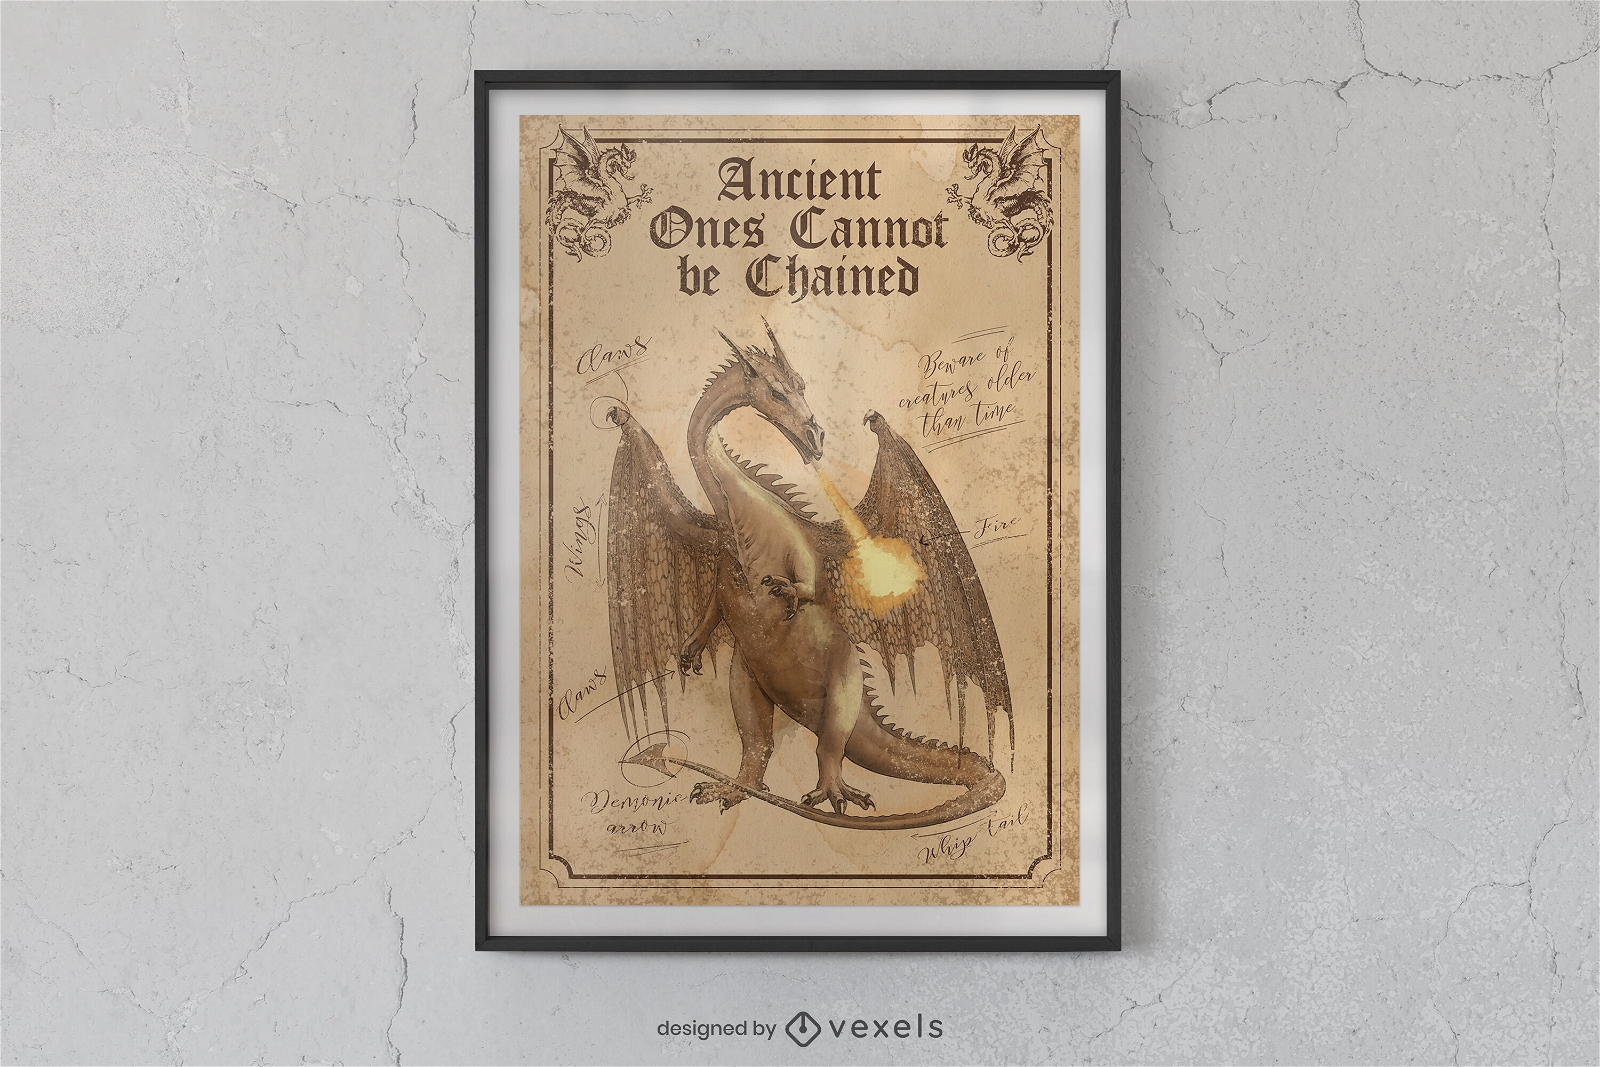 Diseño de cartel de dragón de enciclopedia.